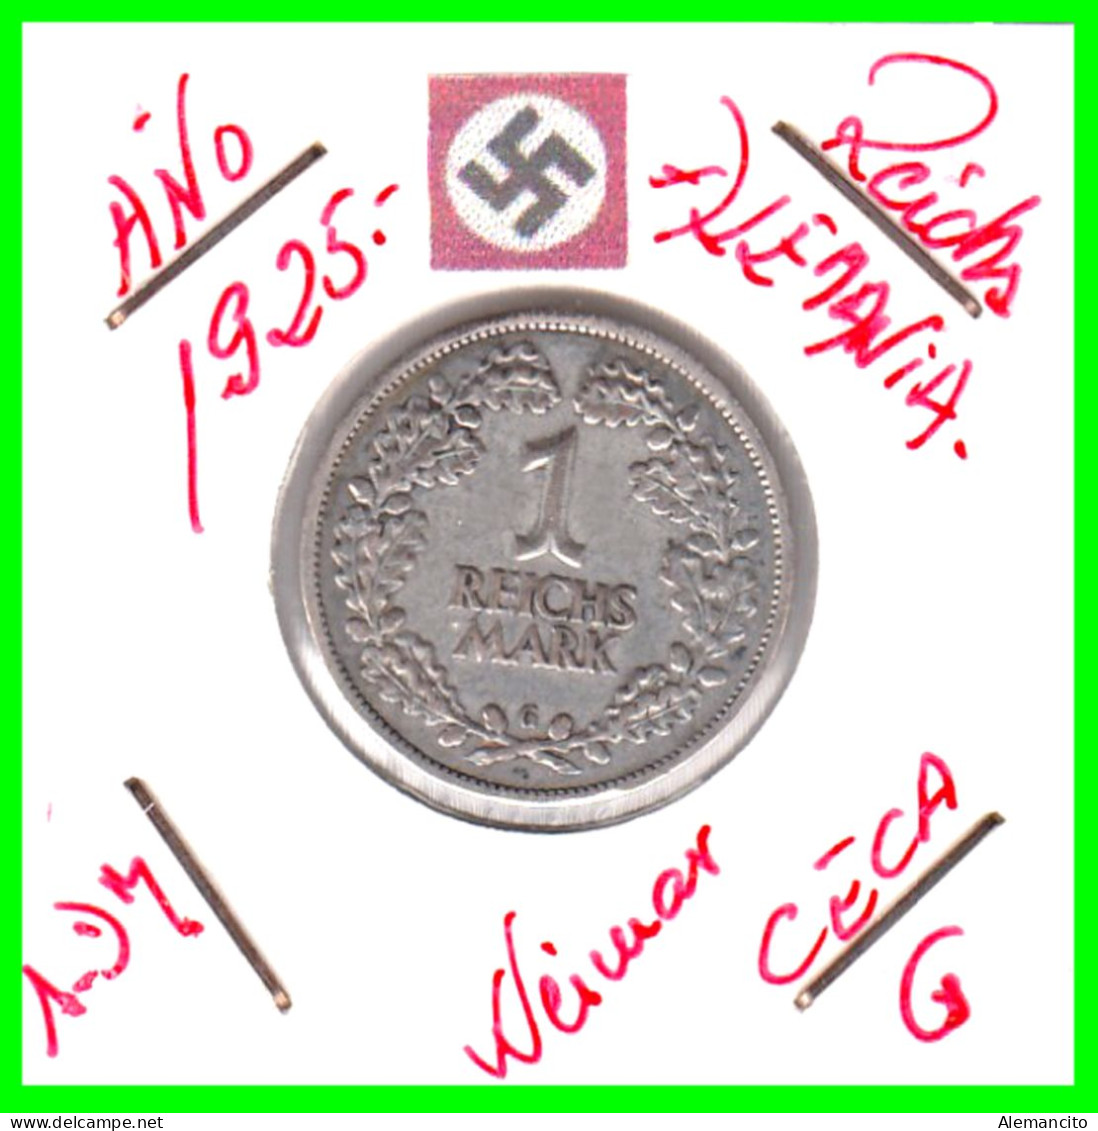 GERMANY REPÚBLICA DE WEIMAR 1 MARK ( 1925 CECA - G )  ( DEUTSCHES REICHSMARK KM # 44 ) - 1 Marco & 1 Reichsmark